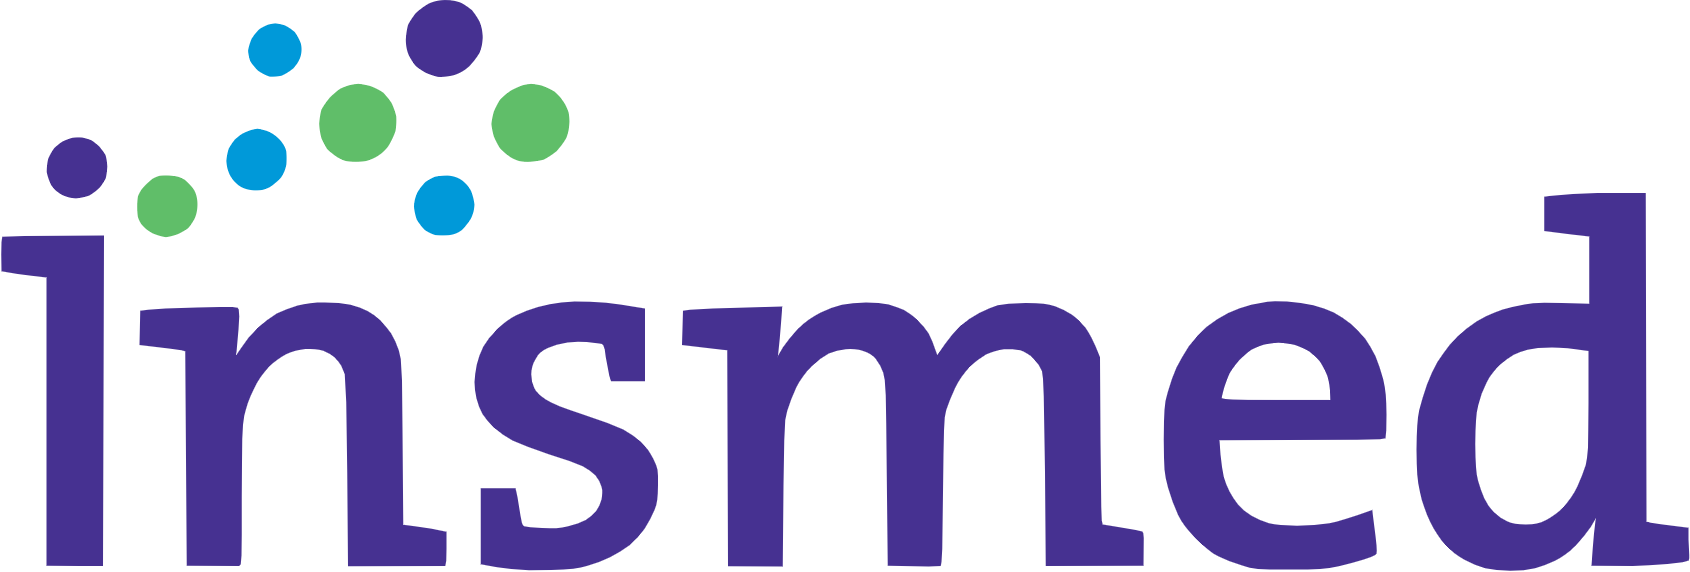 Insmed logo large (transparent PNG)